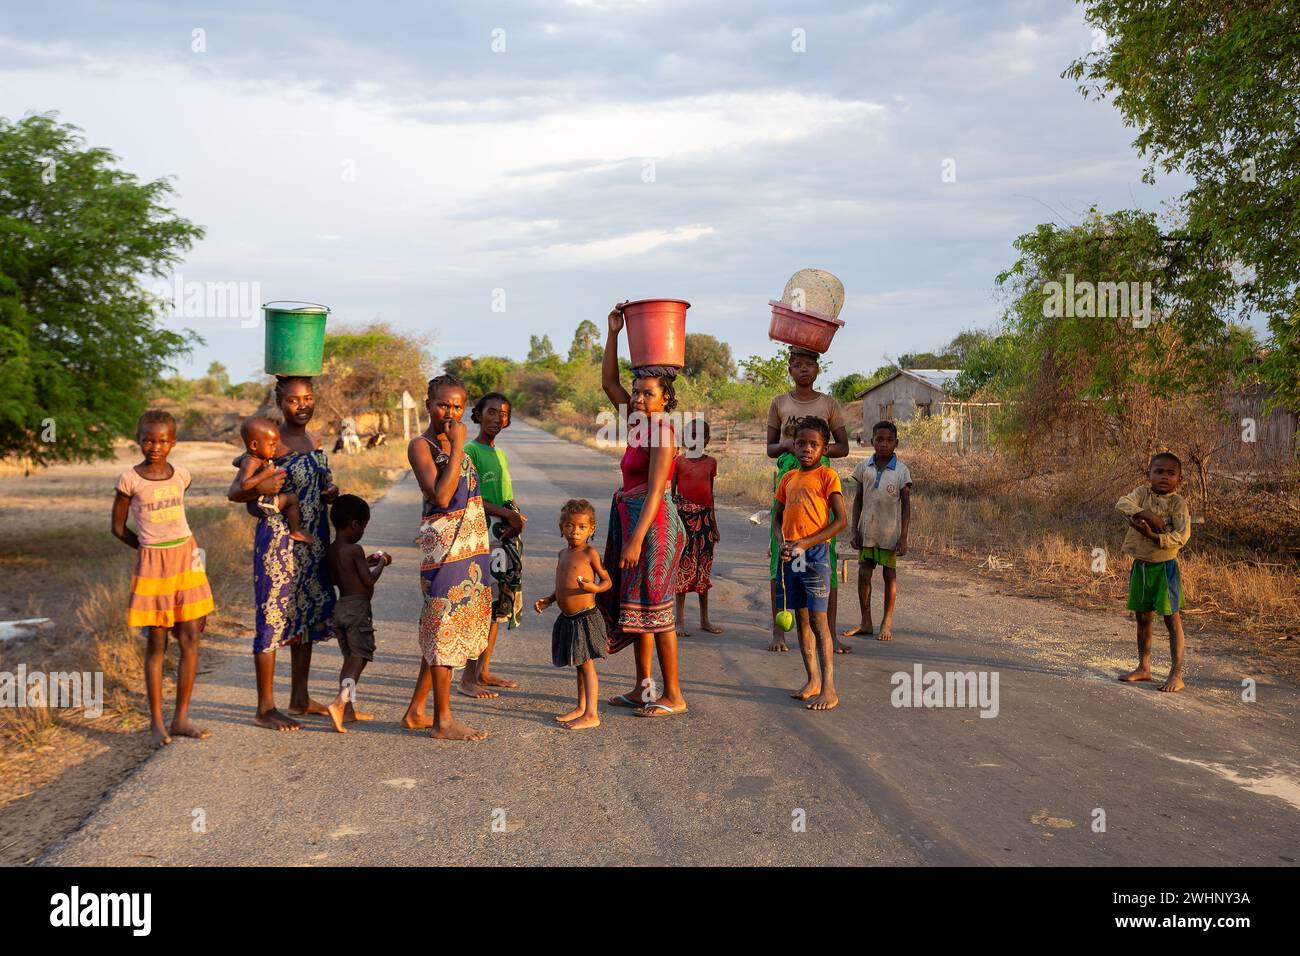 Eine Gruppe von Frauen mit einem Container auf dem Kopf, ein häufiger Anblick in diesem ländlichen äthiopischen Dorf Stockfoto